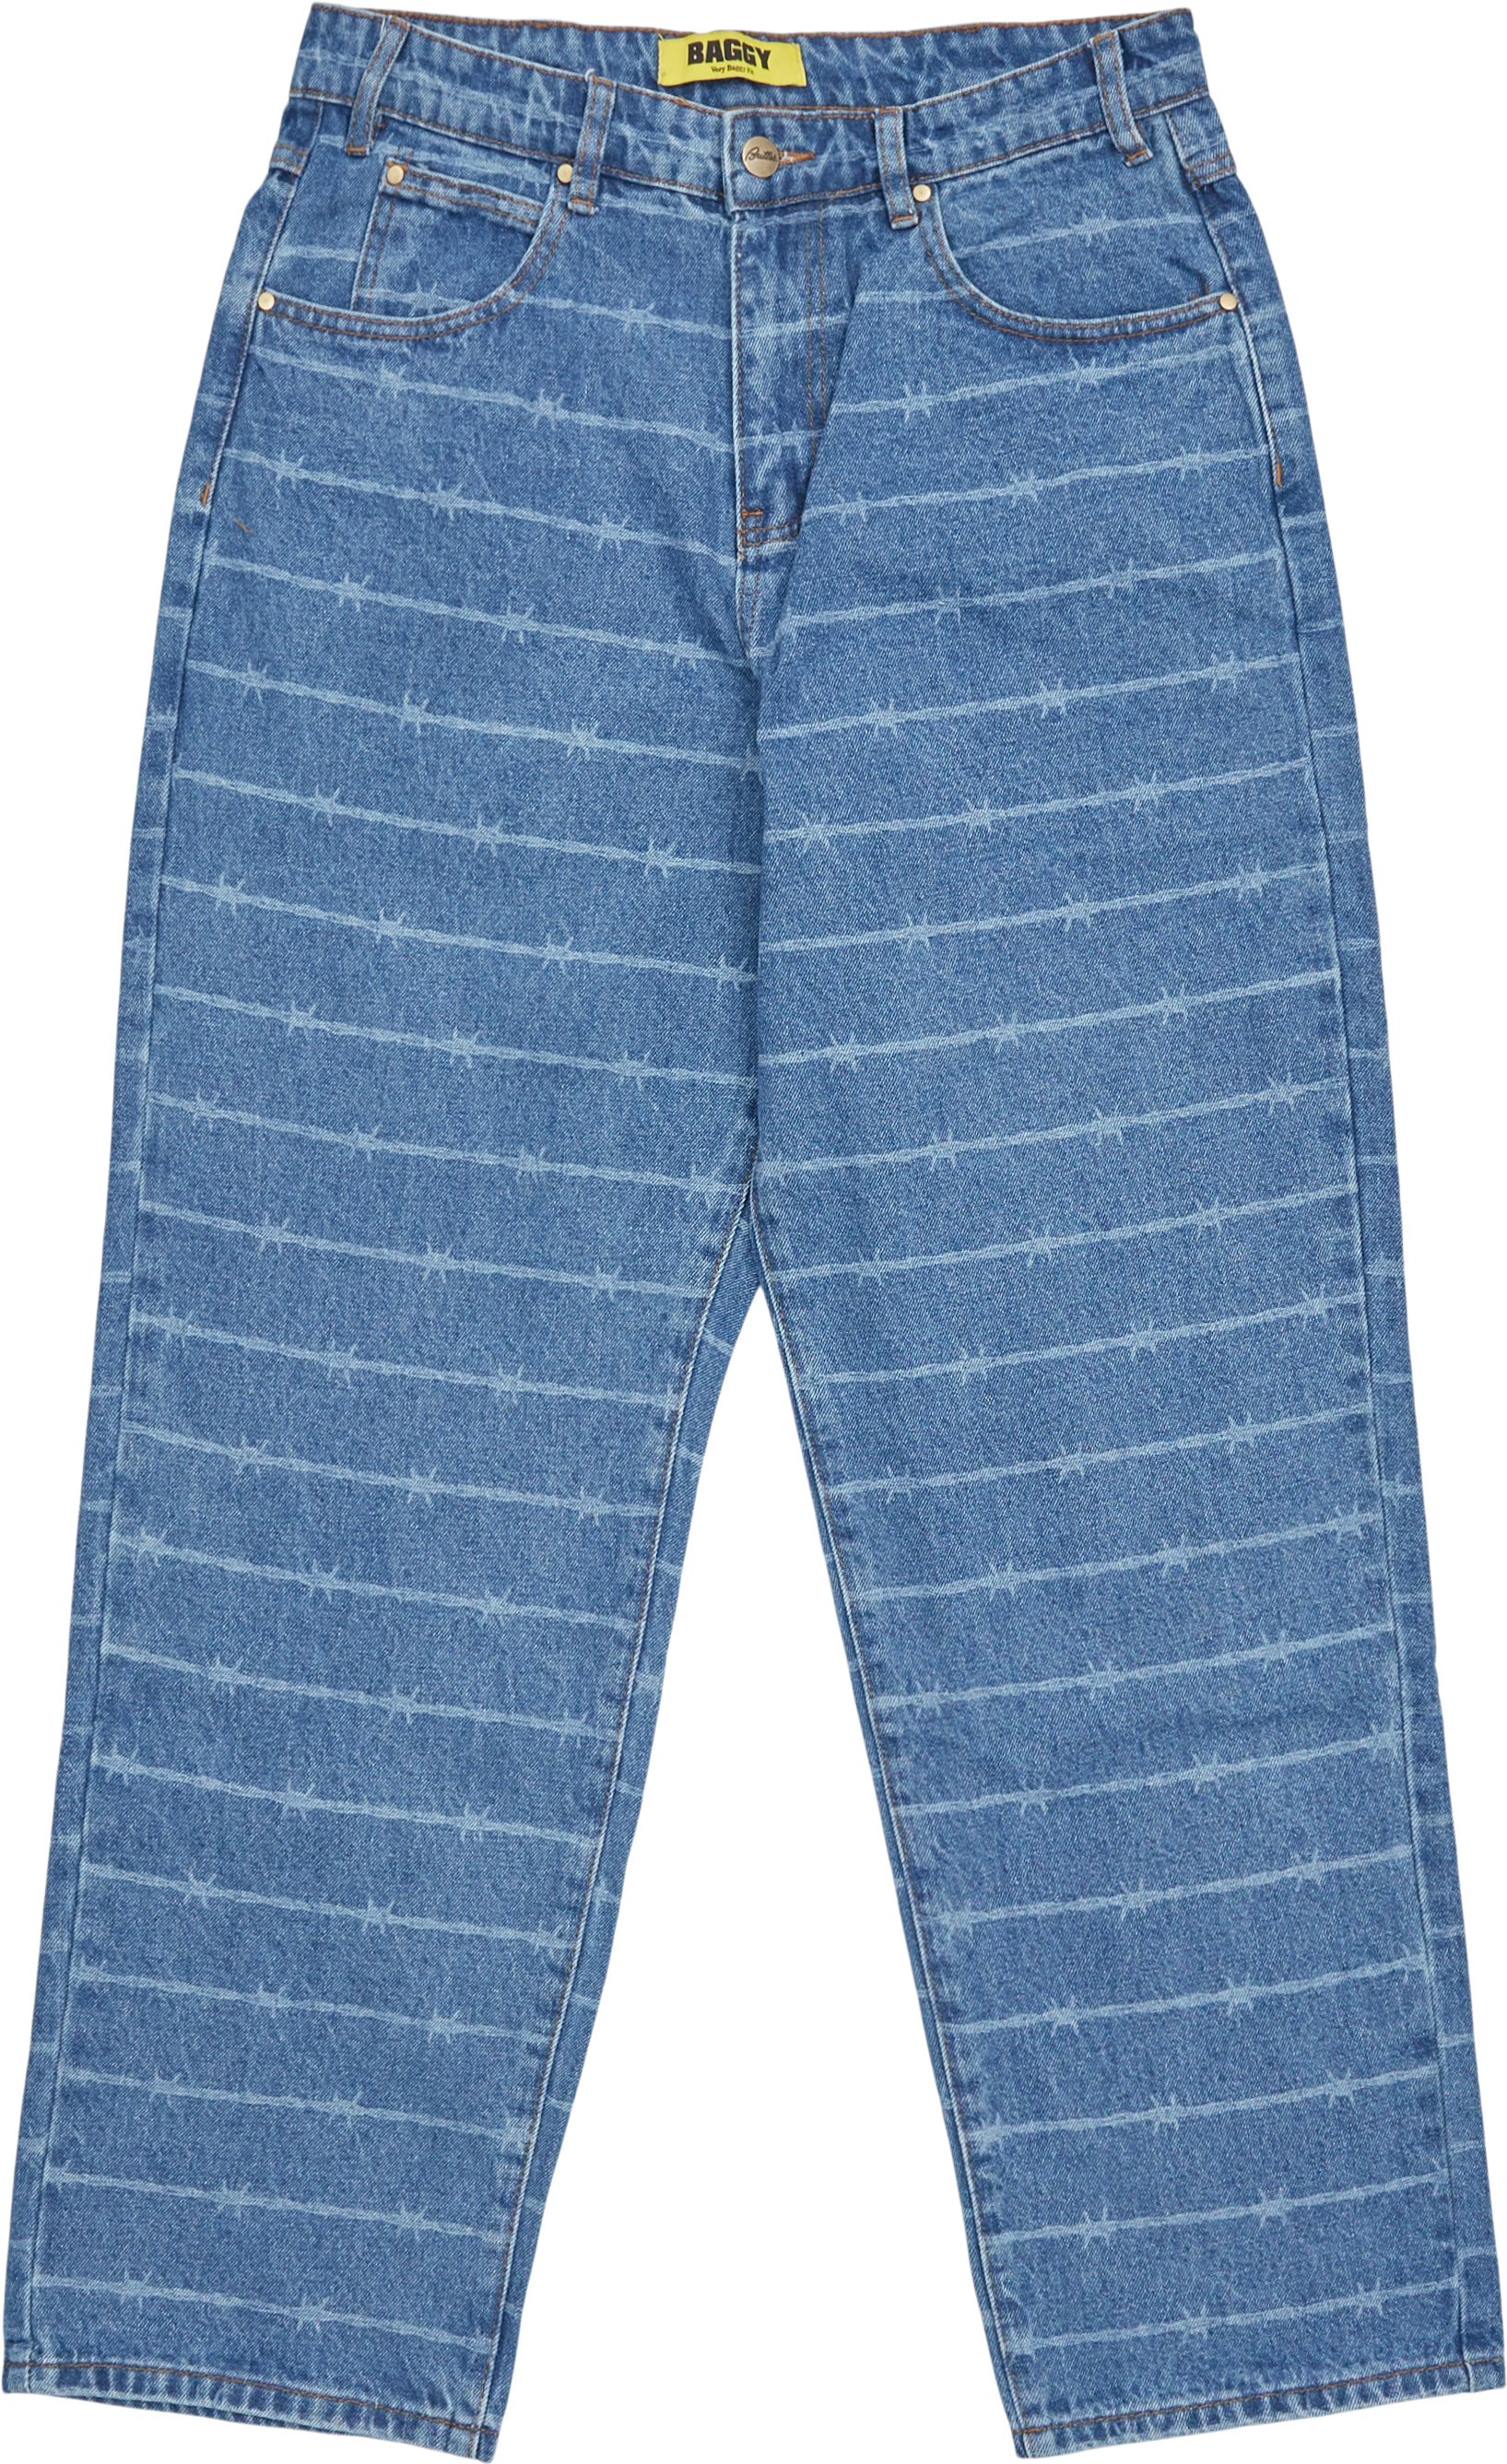 Barbwire Denim Jeans - Jeans - Baggy fit - Denim